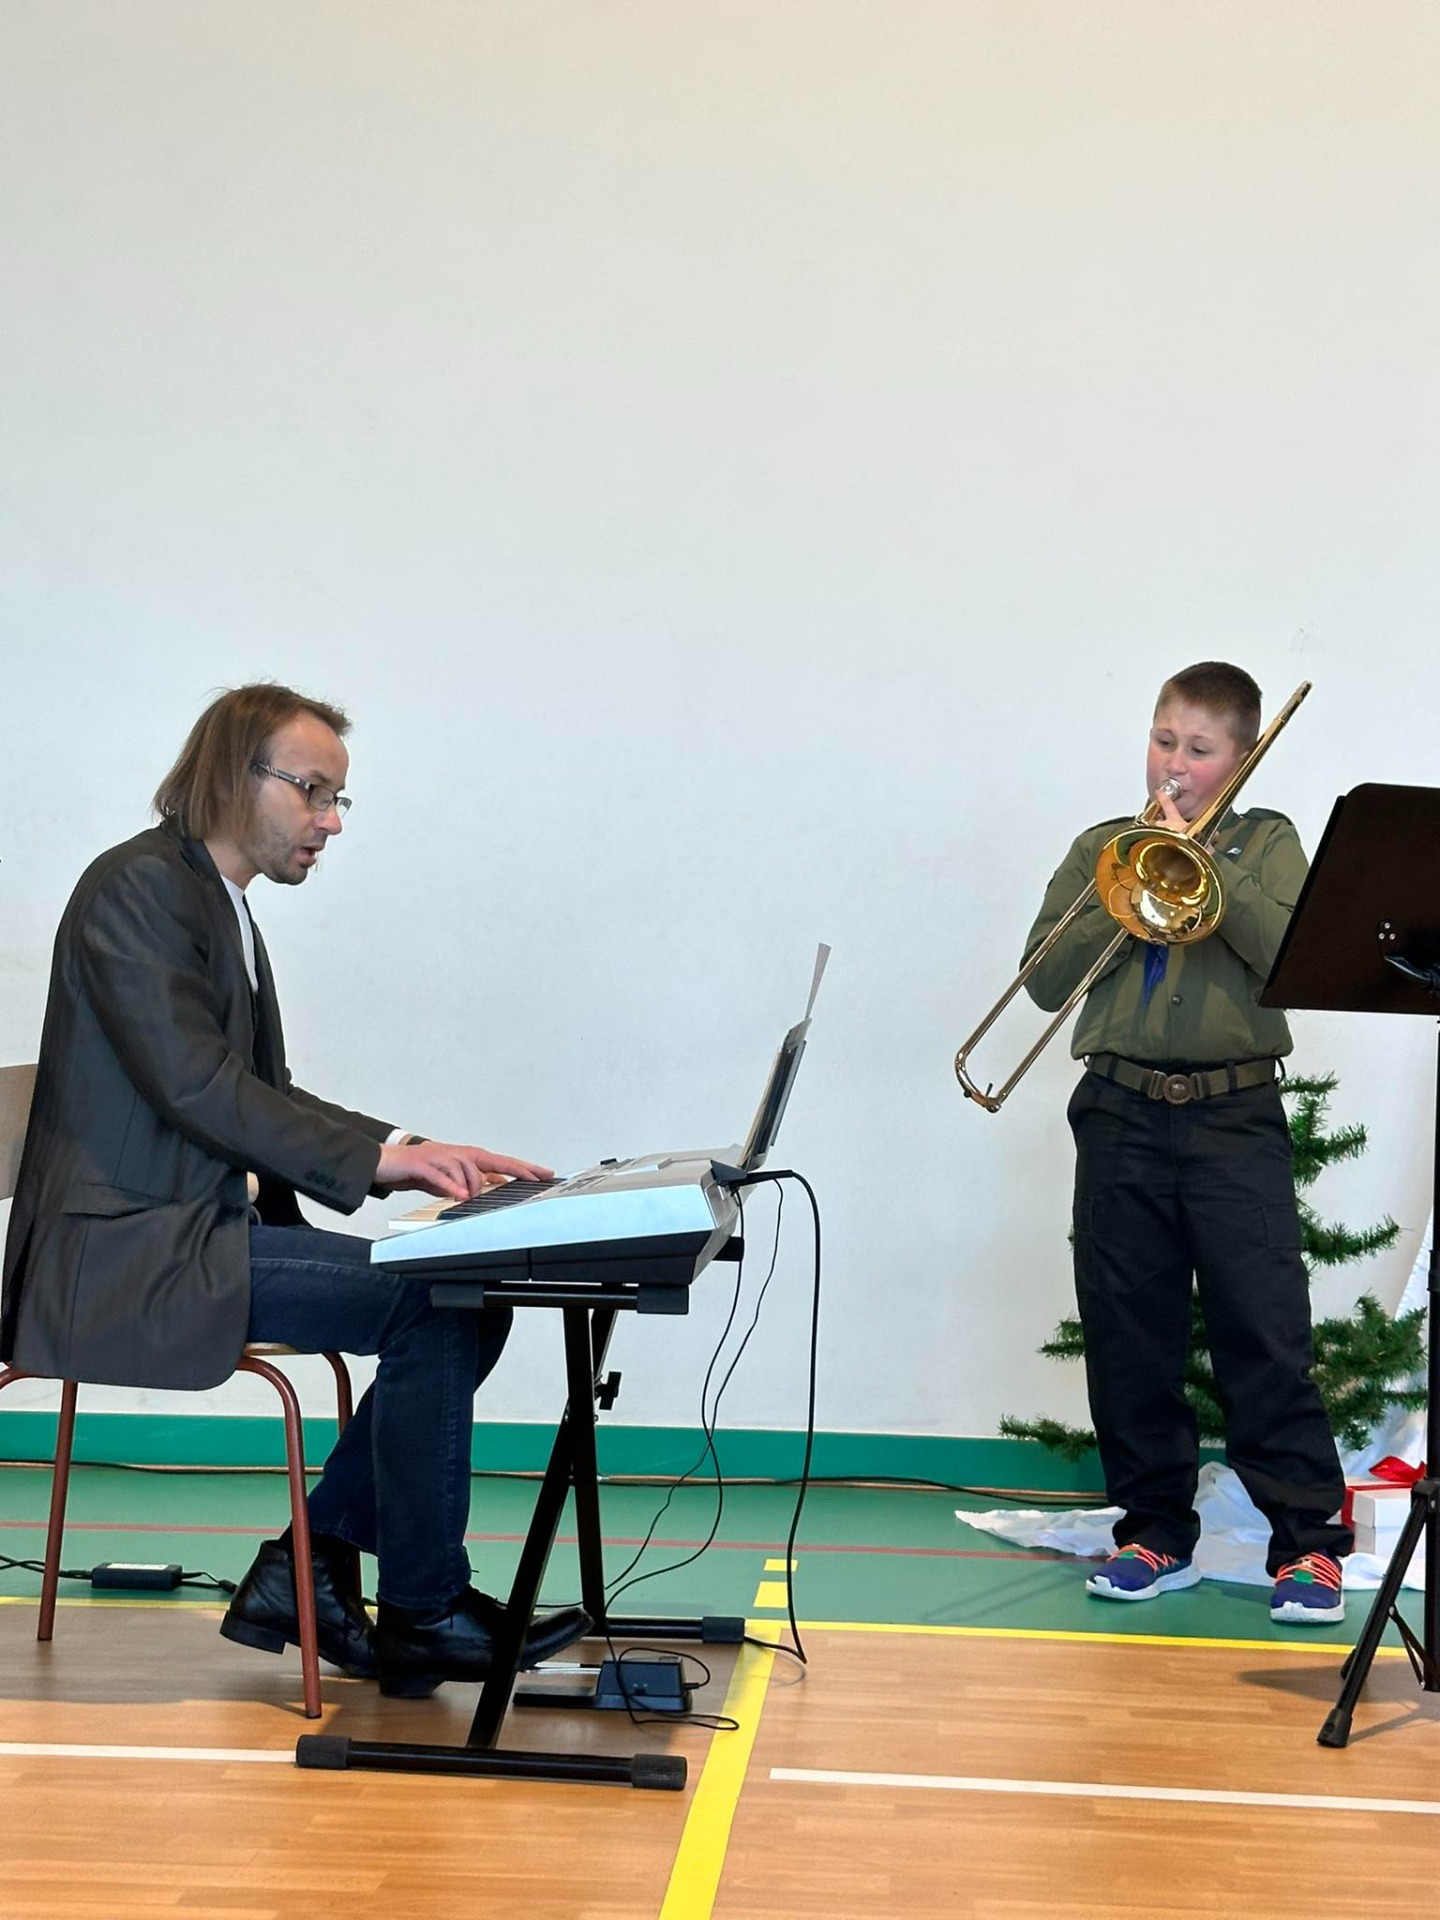 Zdjęcie przedstawia ucznia grającego na puzonie i akompaniującego mu nauczyciela.